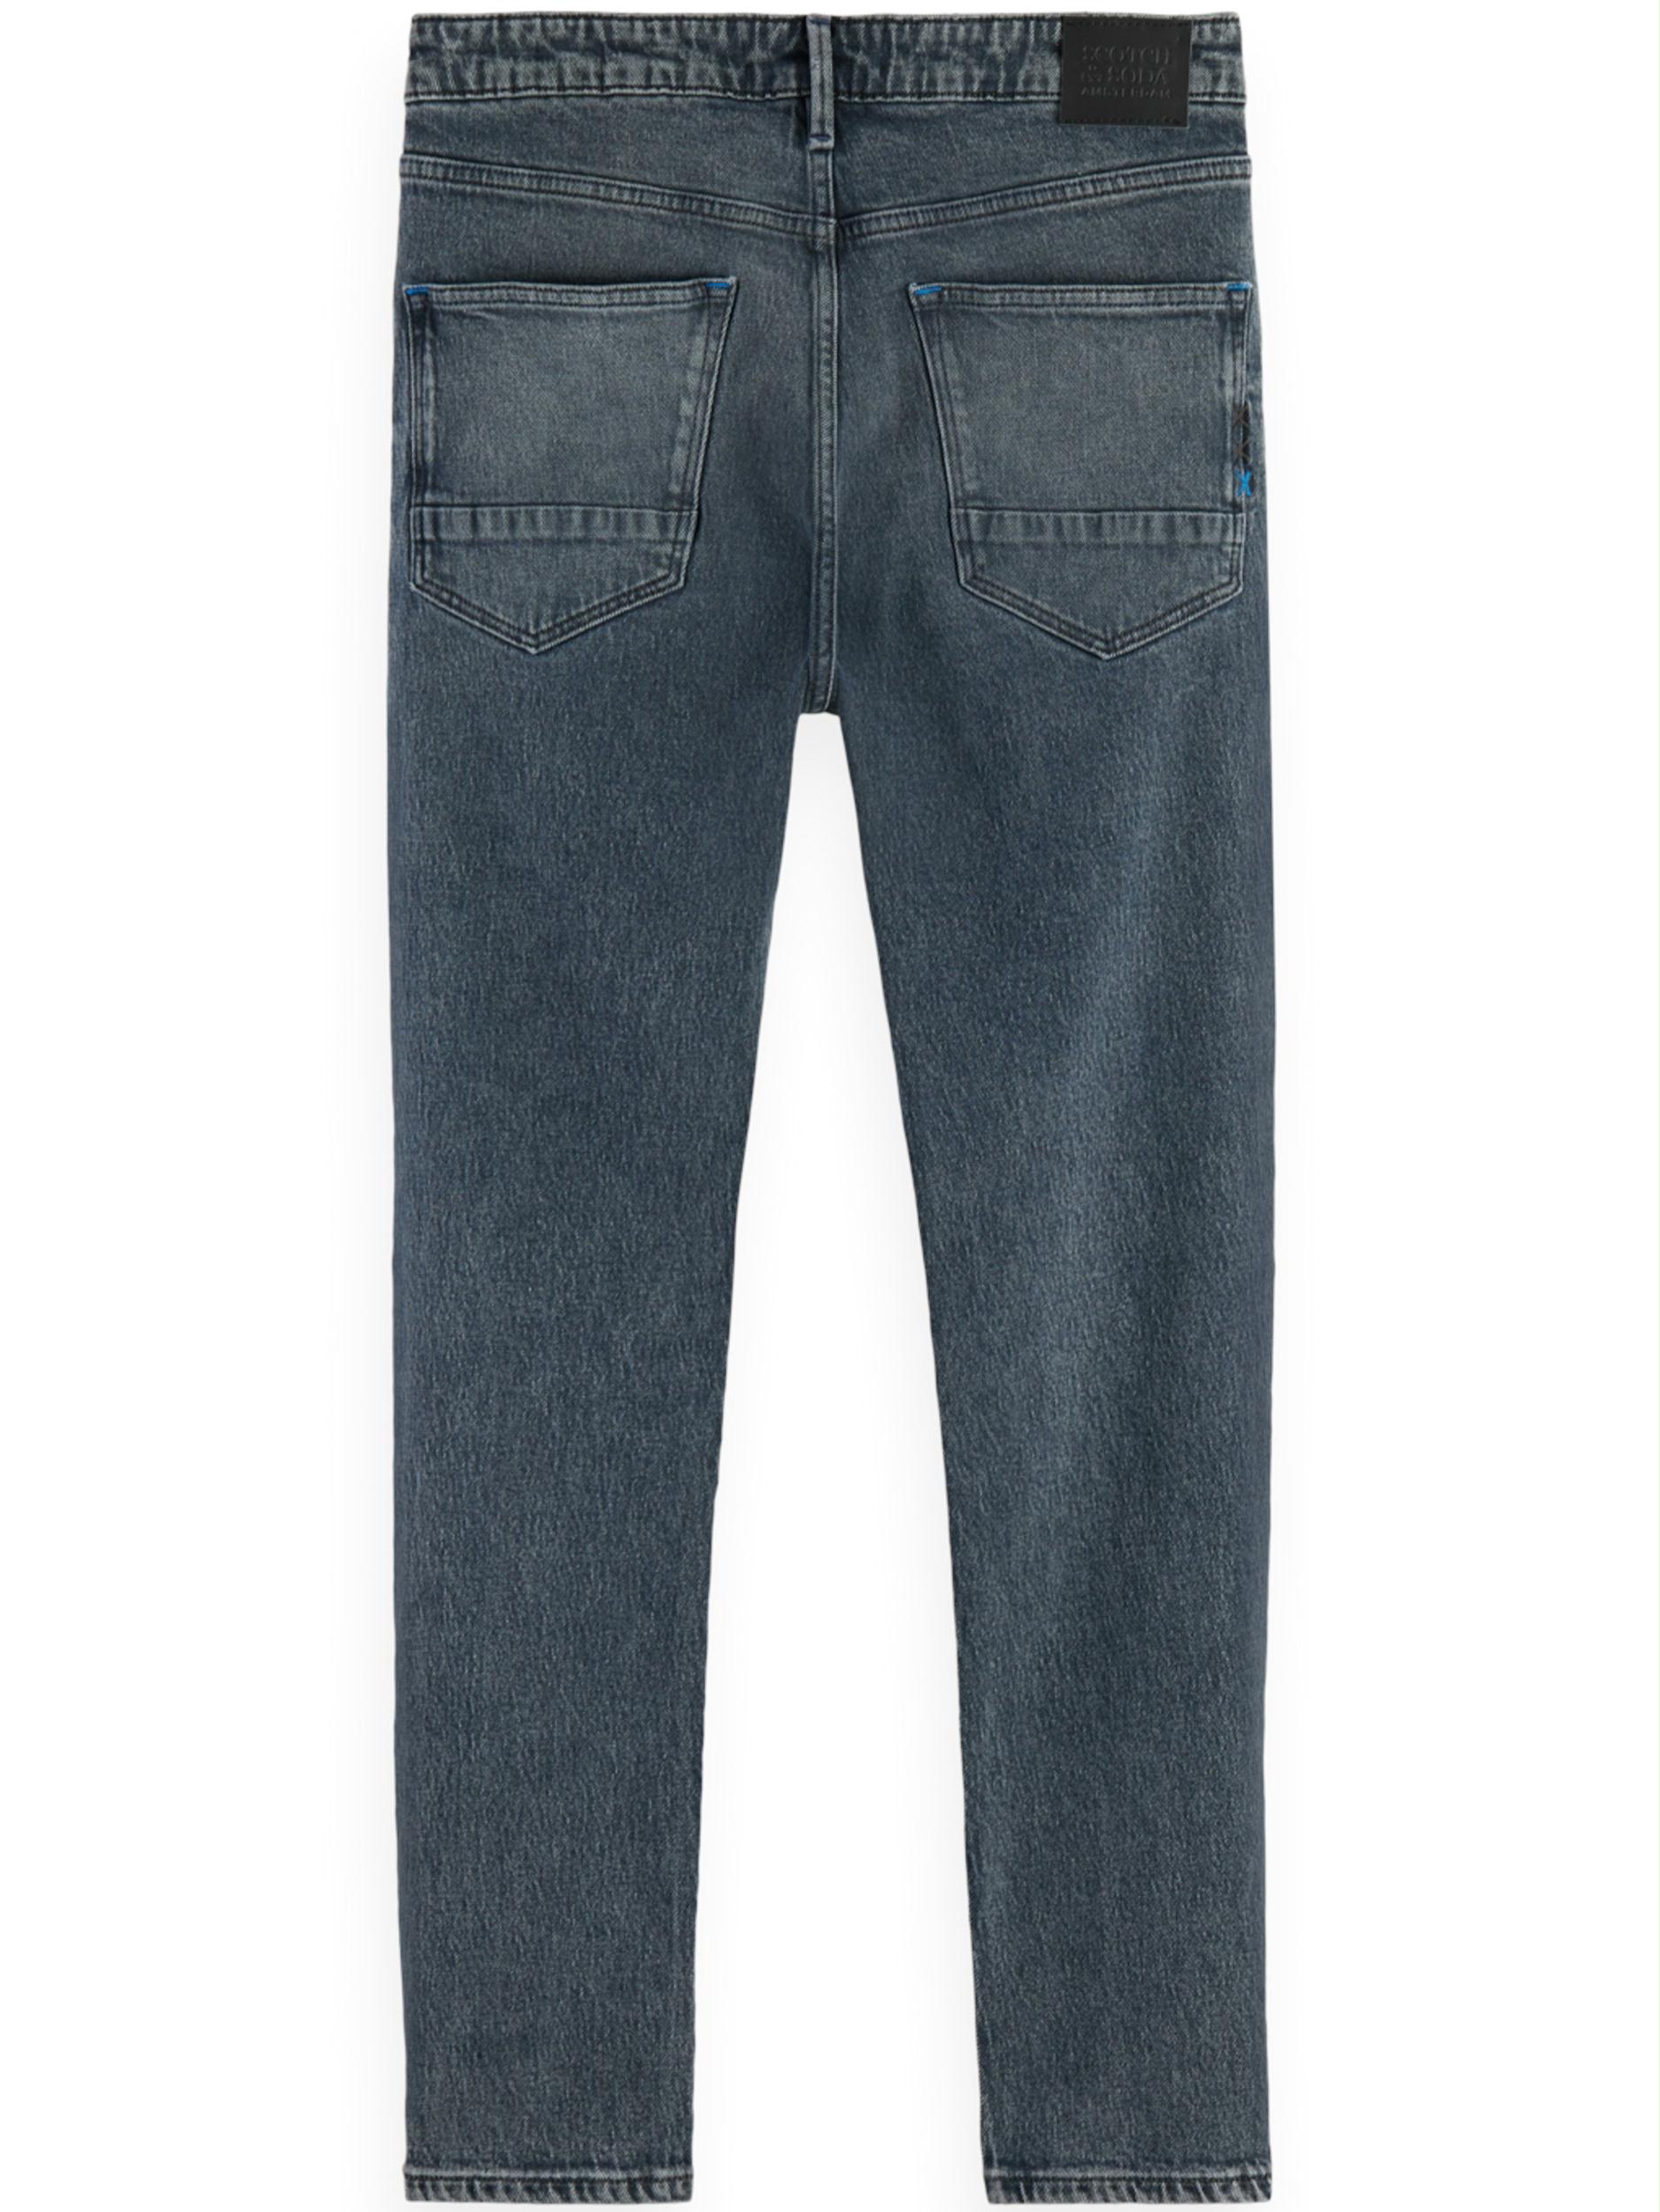 Scotch & Soda 5-Pocket Jeans Blauw Skim Skinny Jeans - Evolution 169983/1031